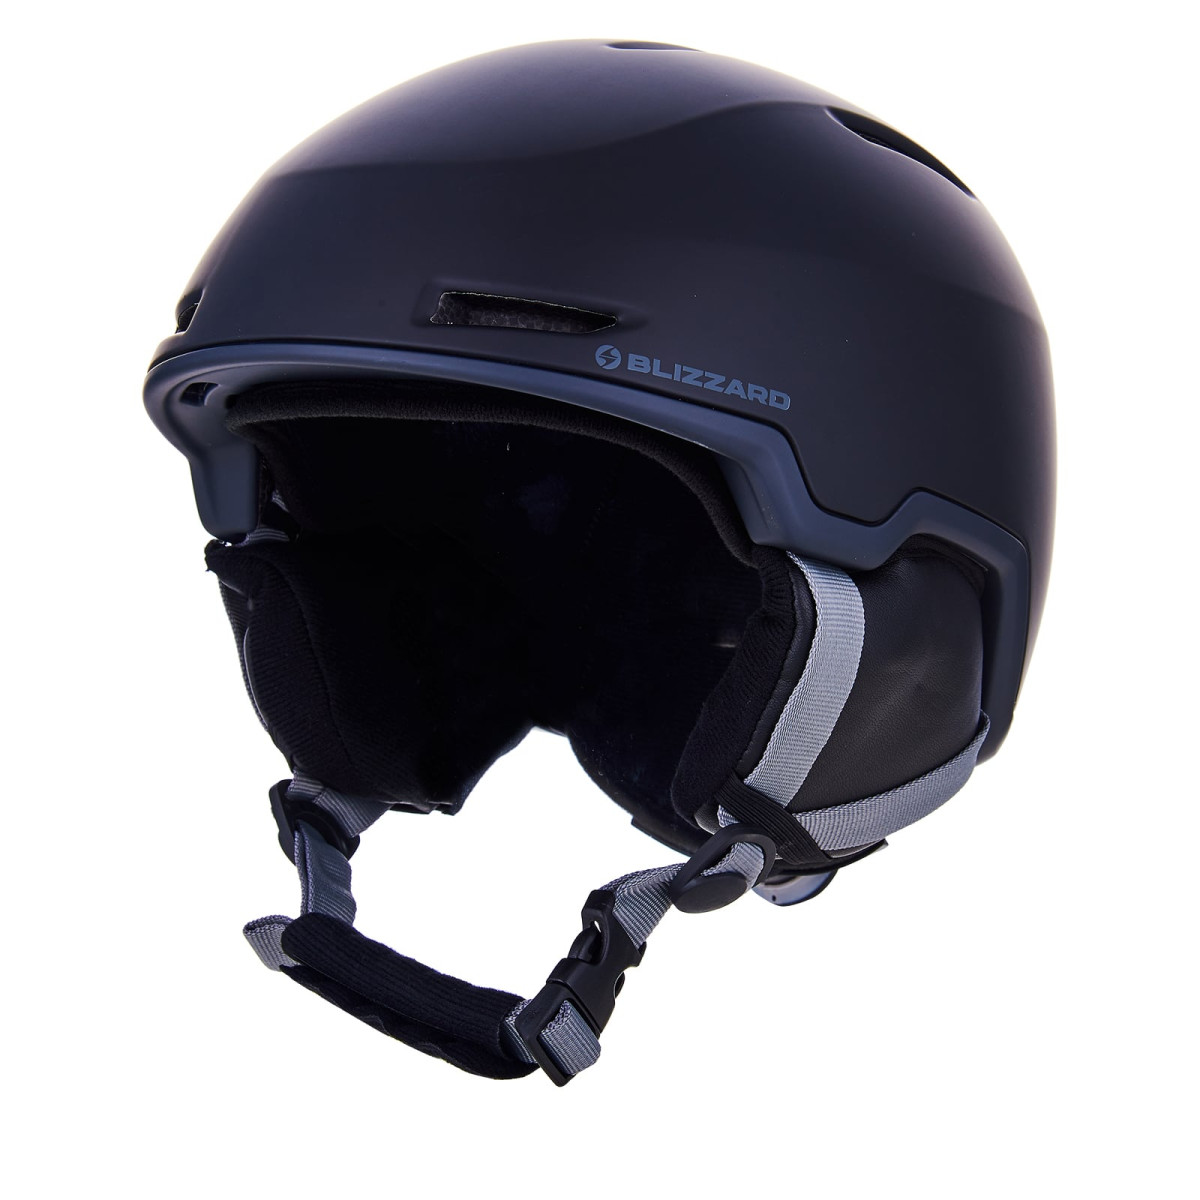 Blizzard Viper Ski Helmet - černá/šedá 2021/2022